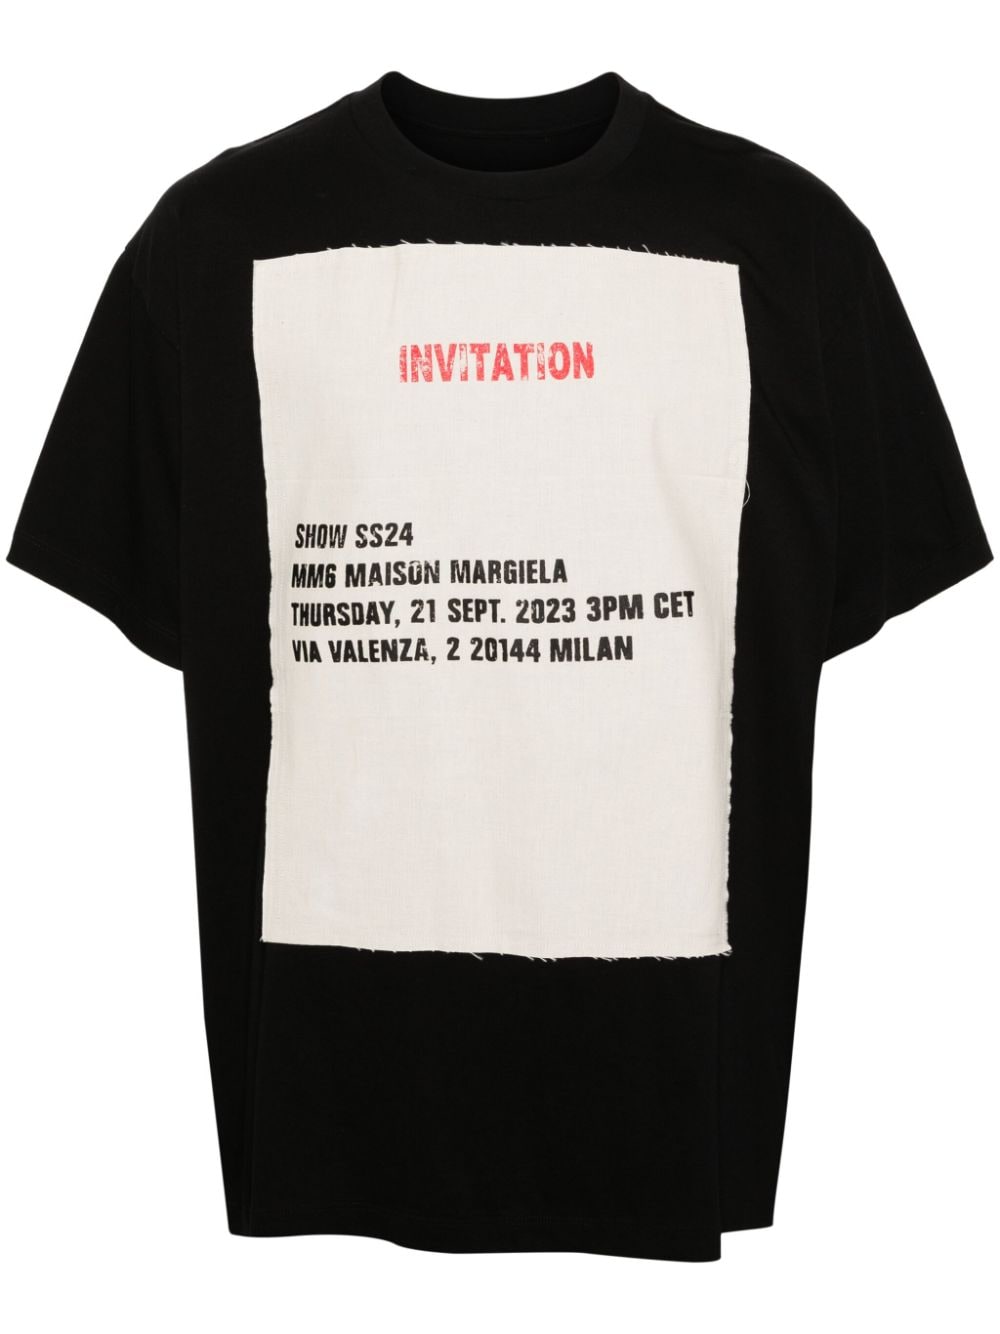 MM6 Maison Margiela T-Shirt mit Einladungs-Patch - Schwarz